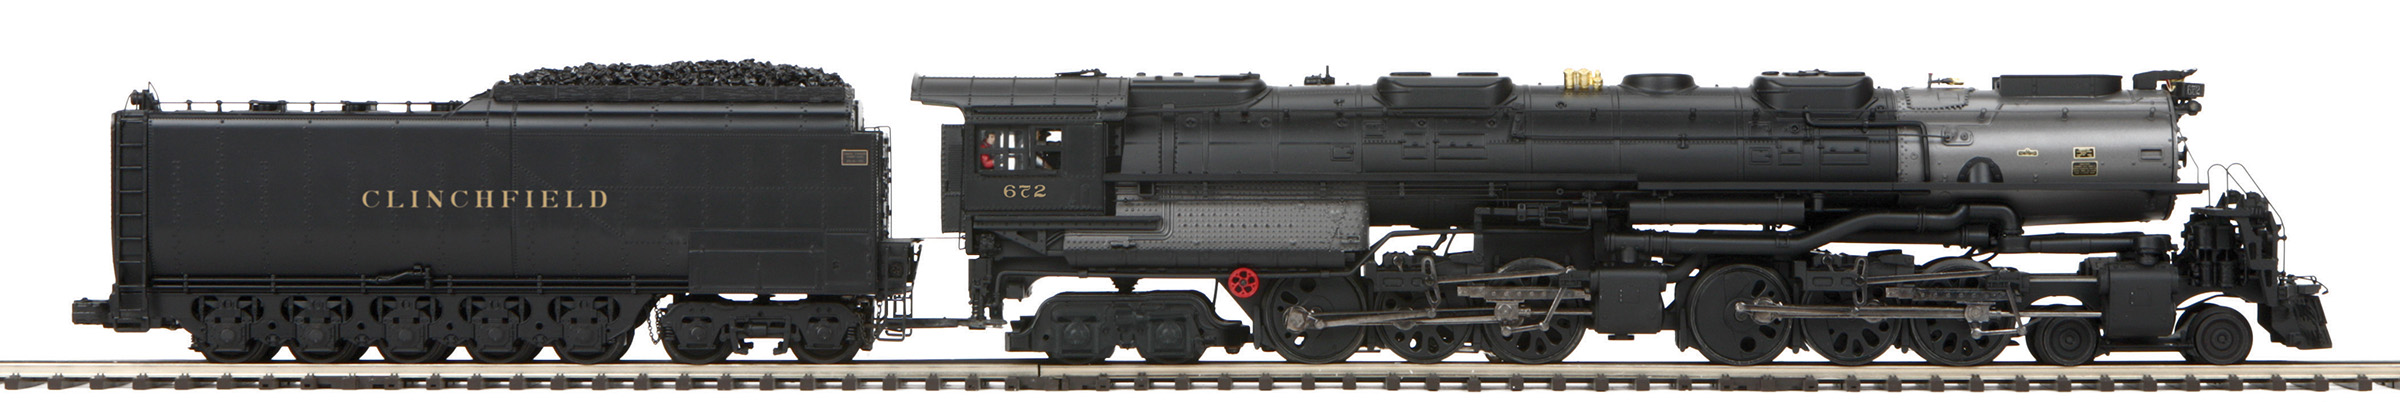 MTH20-3890-1 Clinchfield 4-6-6-4 Challenger Steam Engine PS3.0